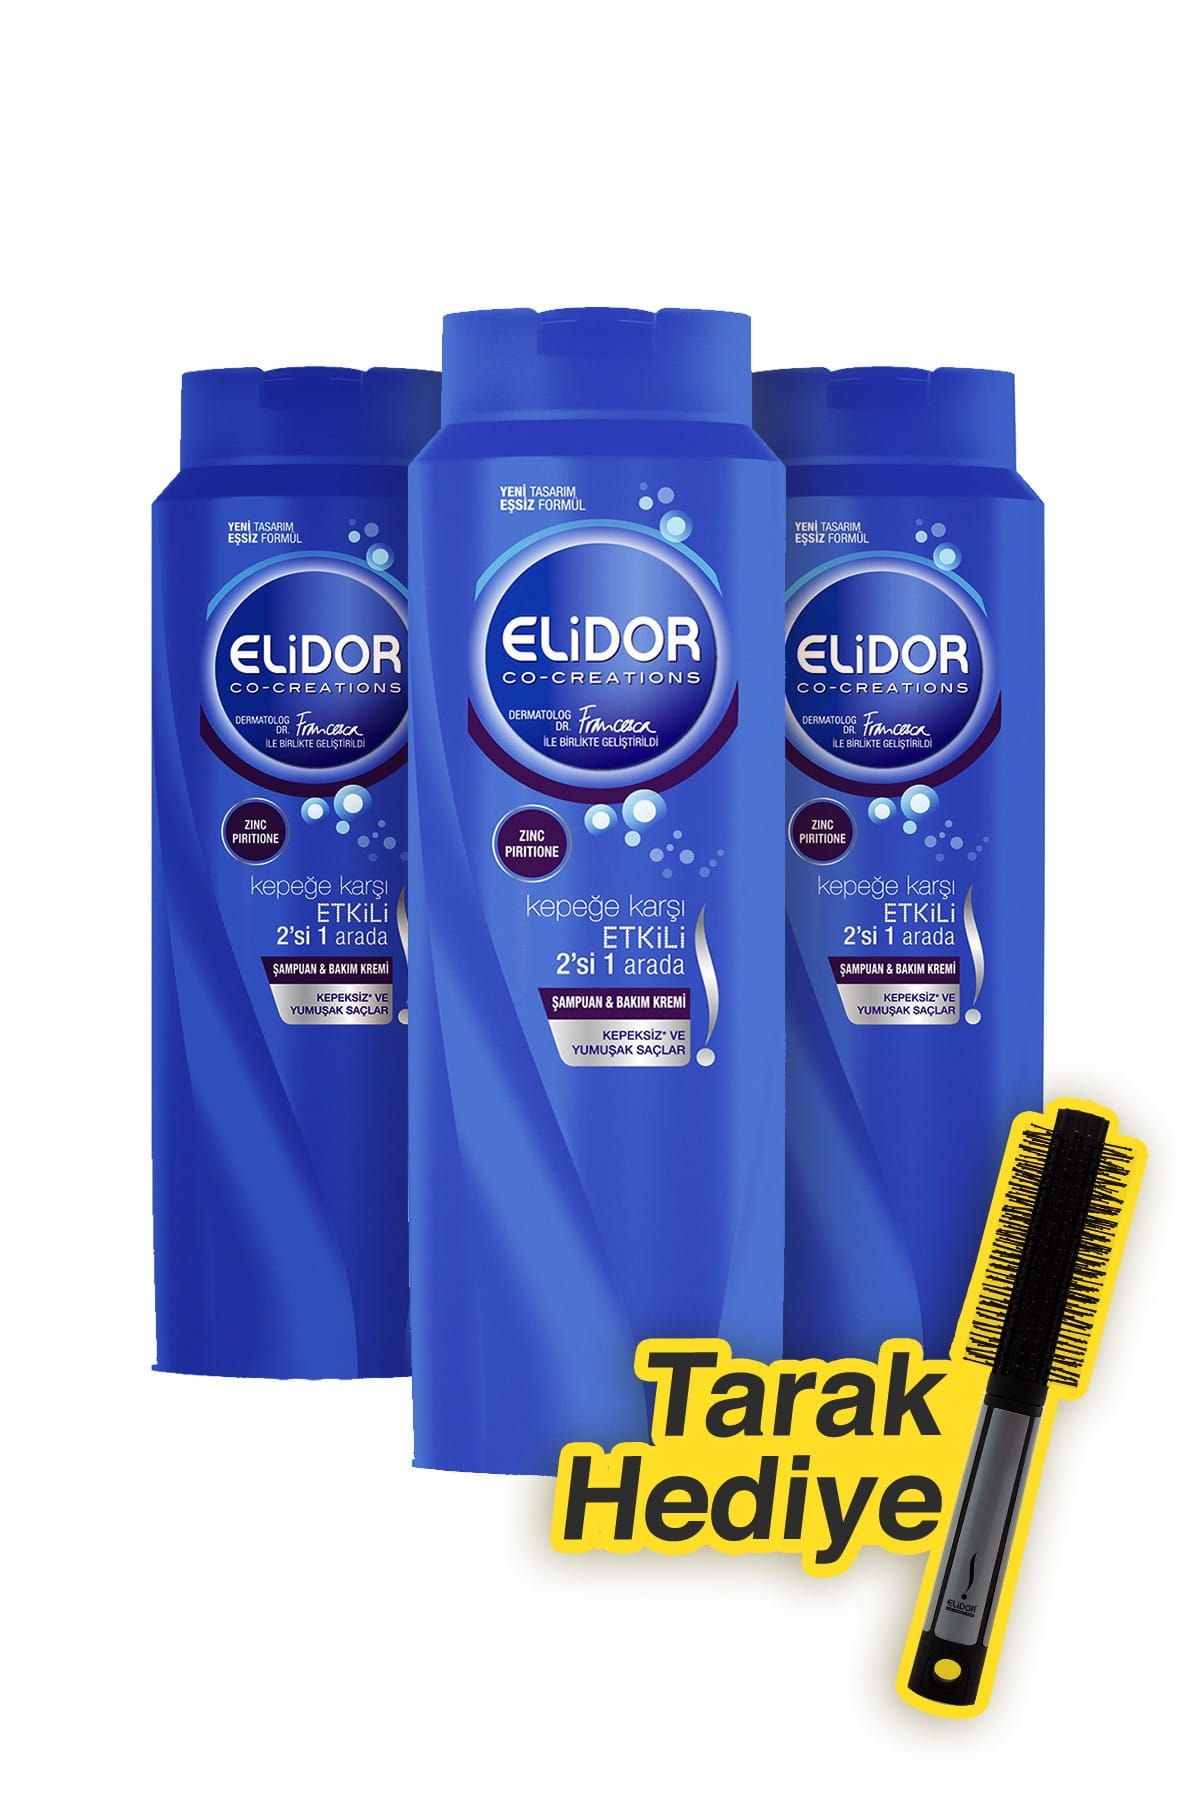 Elidor Şampuan & Saç Kremi Kepeğe Karşı Etkili 500 ml x 3 + Tarak Hediye